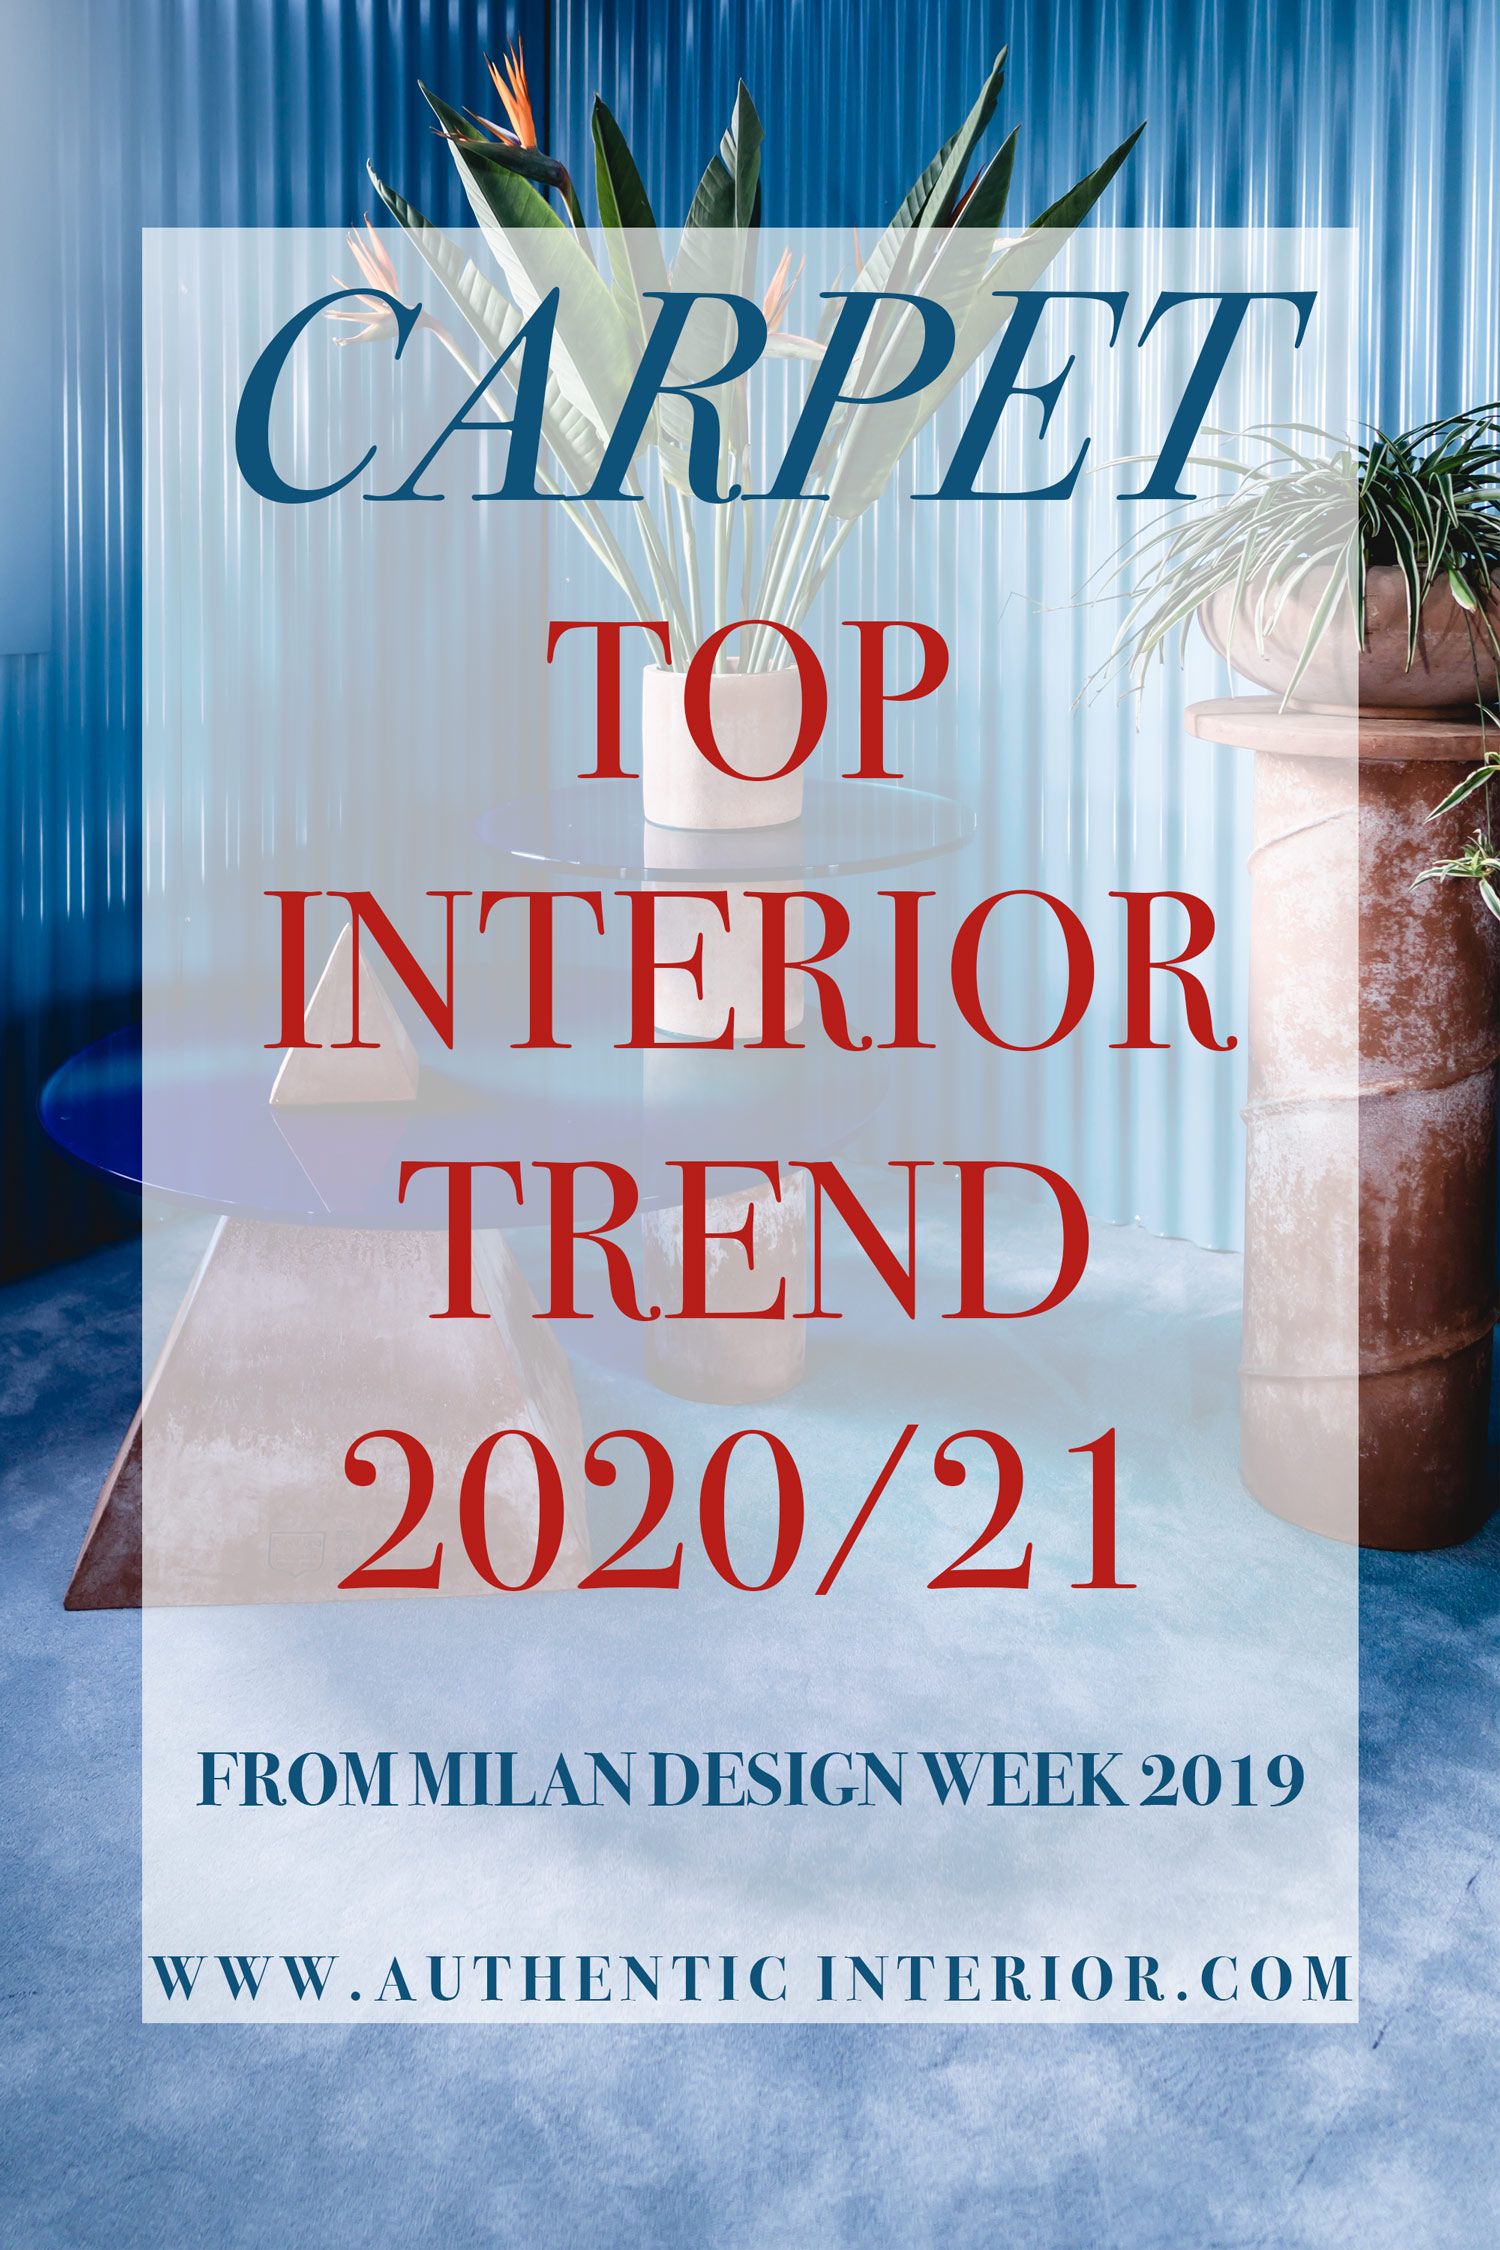 Interior design trends for 2020 - Carpet interior trend - Authentic Interior design studio & blog www.authenticinterior.com